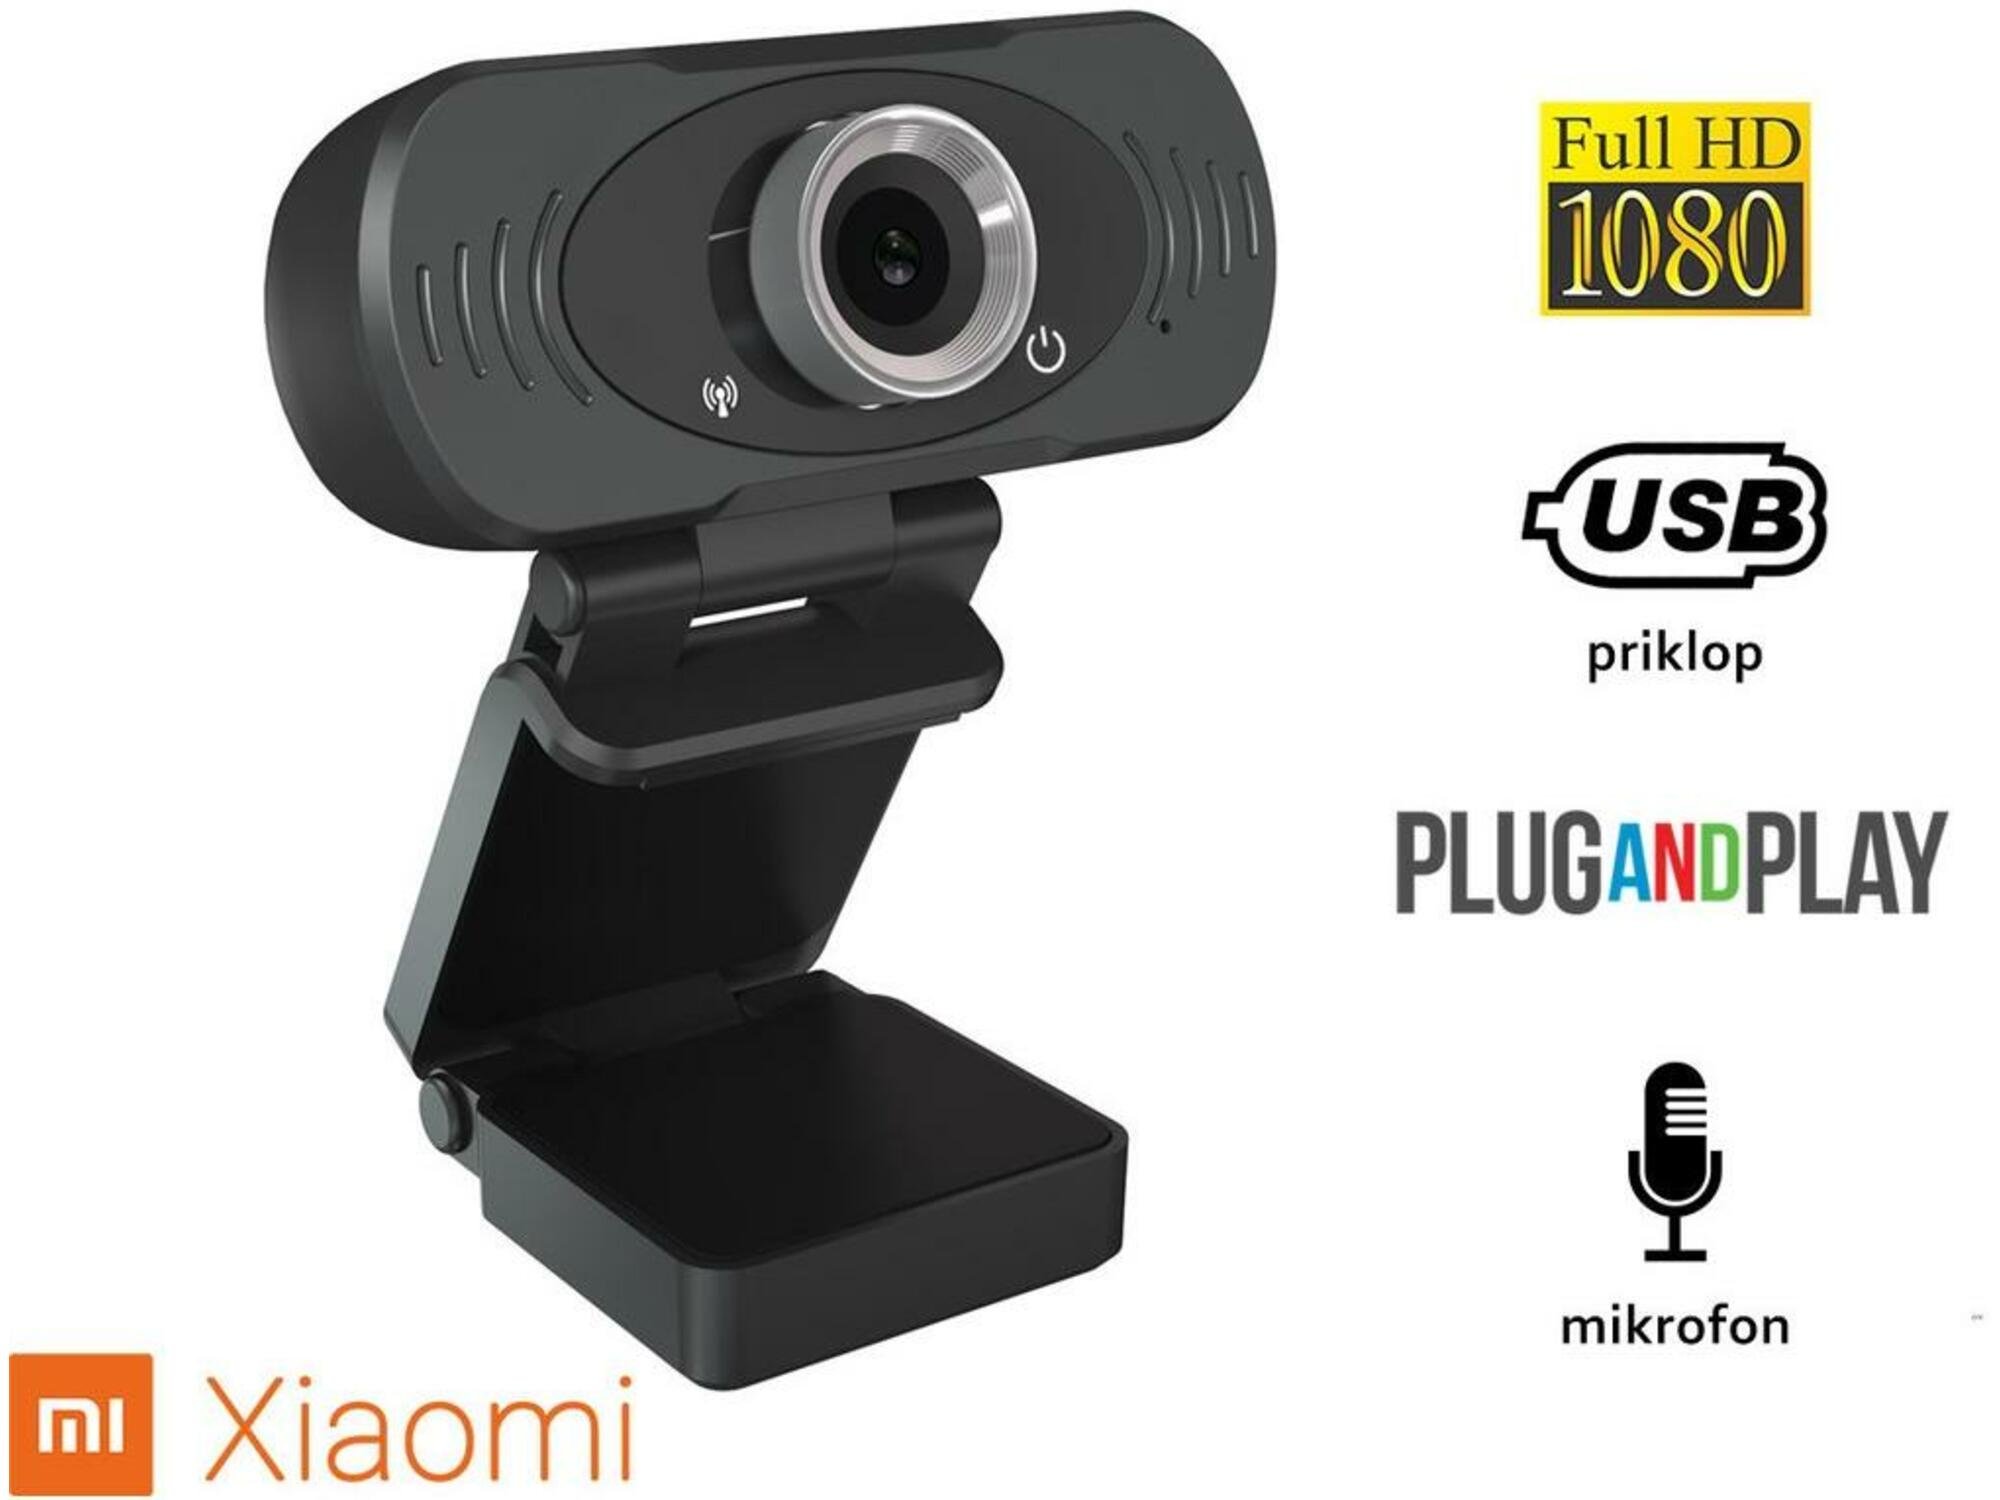 XIAOMI spletna kamera  IMILAB, model W88S, USB2.0, 1080p Full HD